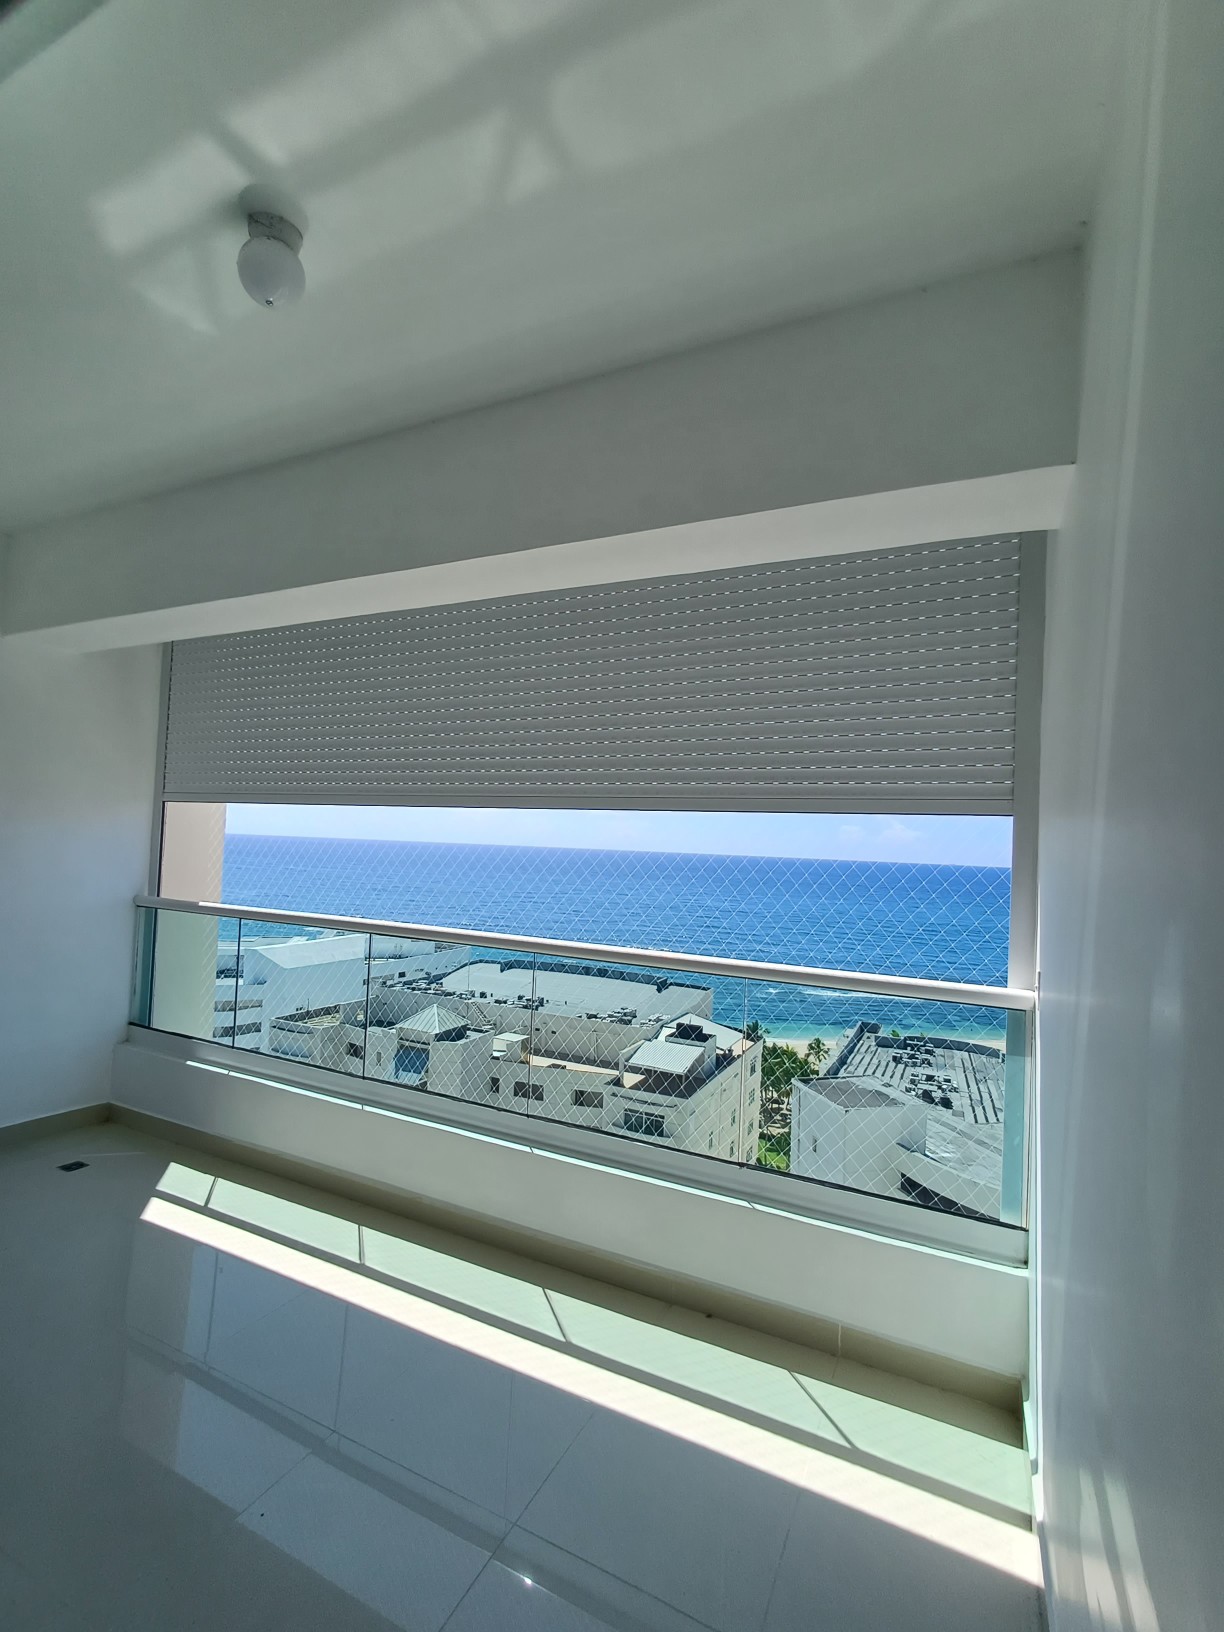 apartamentos - Vendo en Juan Dolio, hermoso apartamento con vista 360 del mar con línea blanca 0